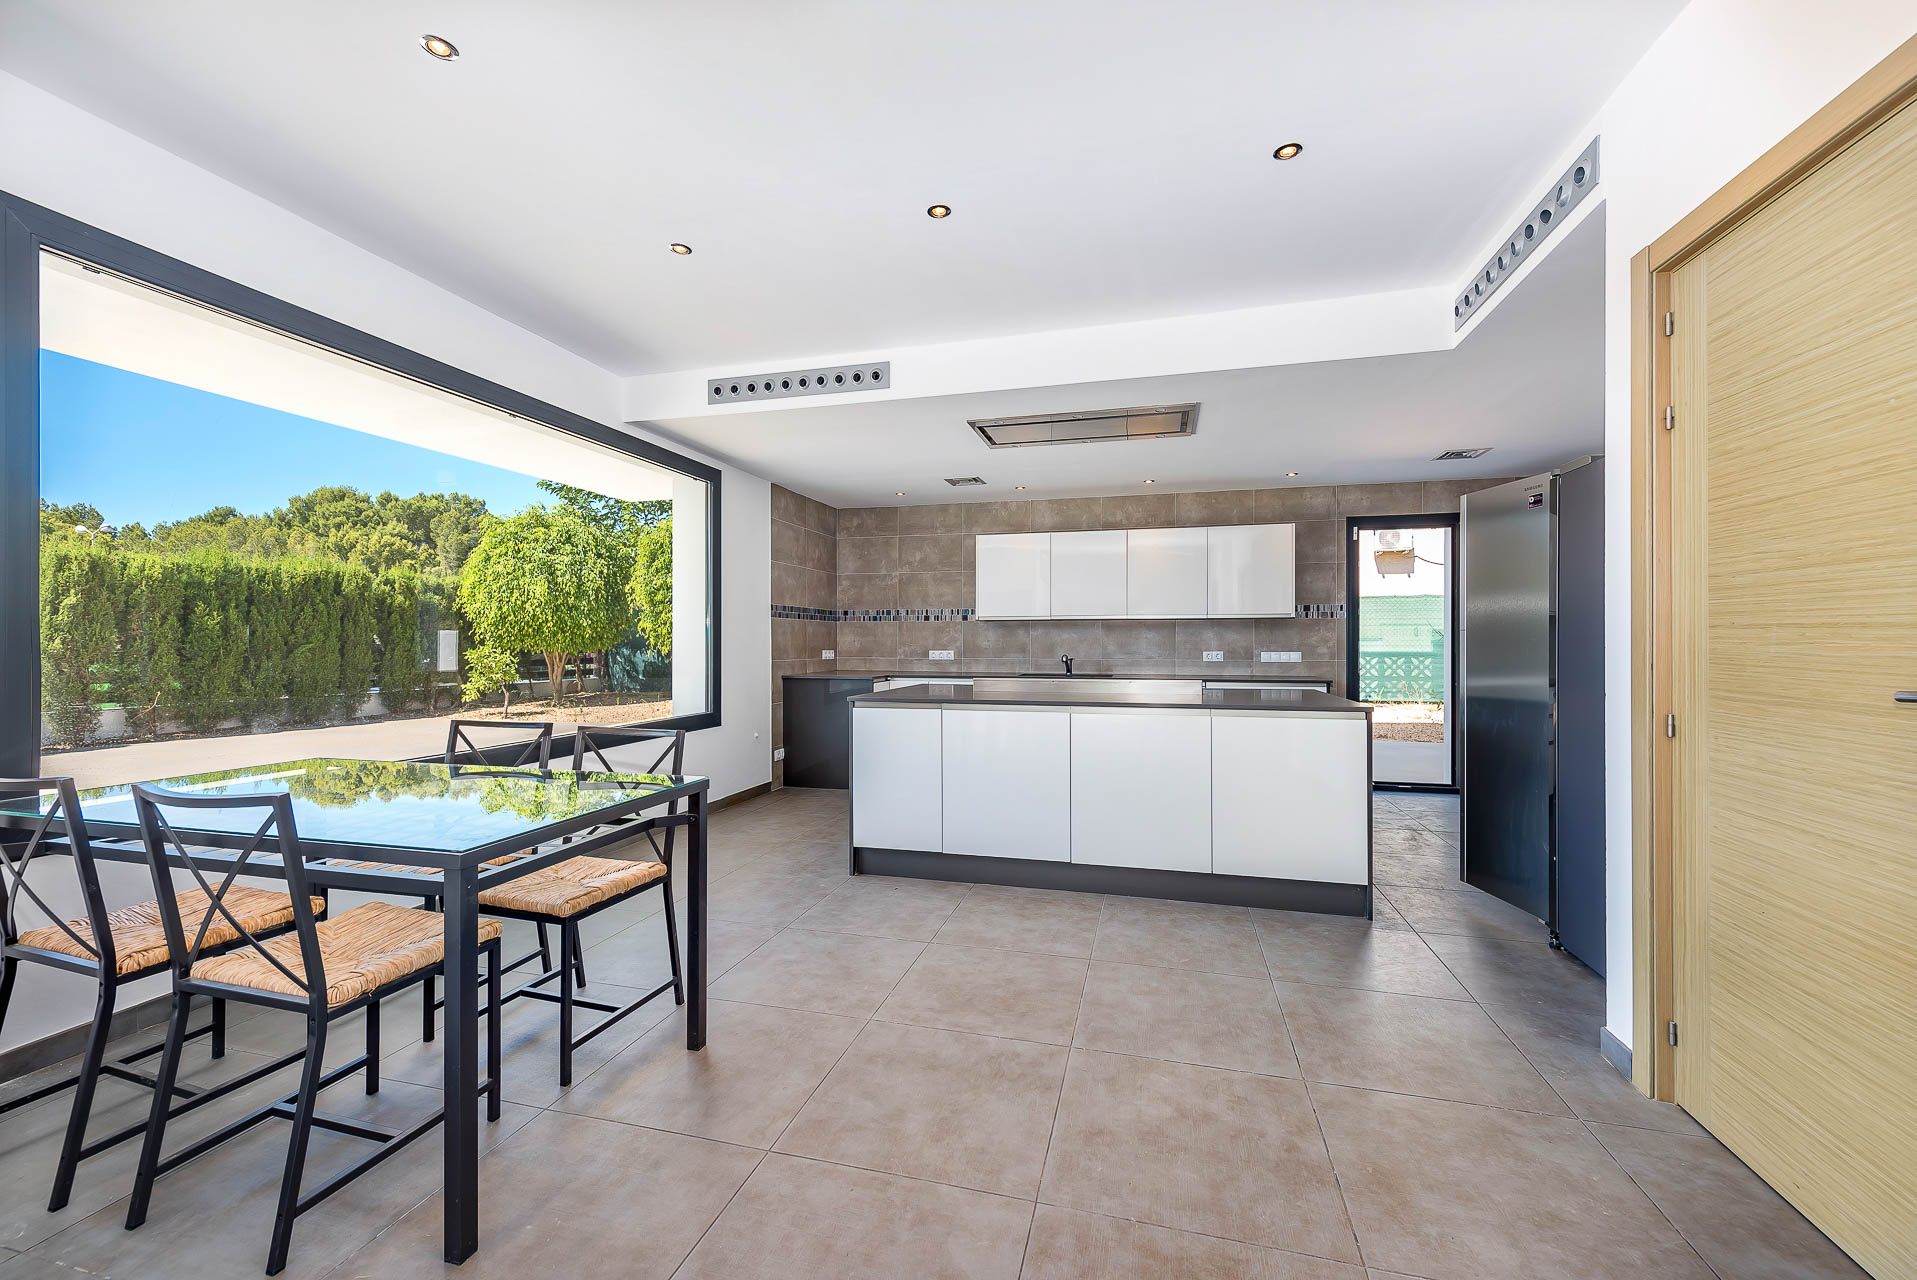 Moderne Familienvilla mit Pool in Costa de la Calma - Offene Küche mit Essbereich